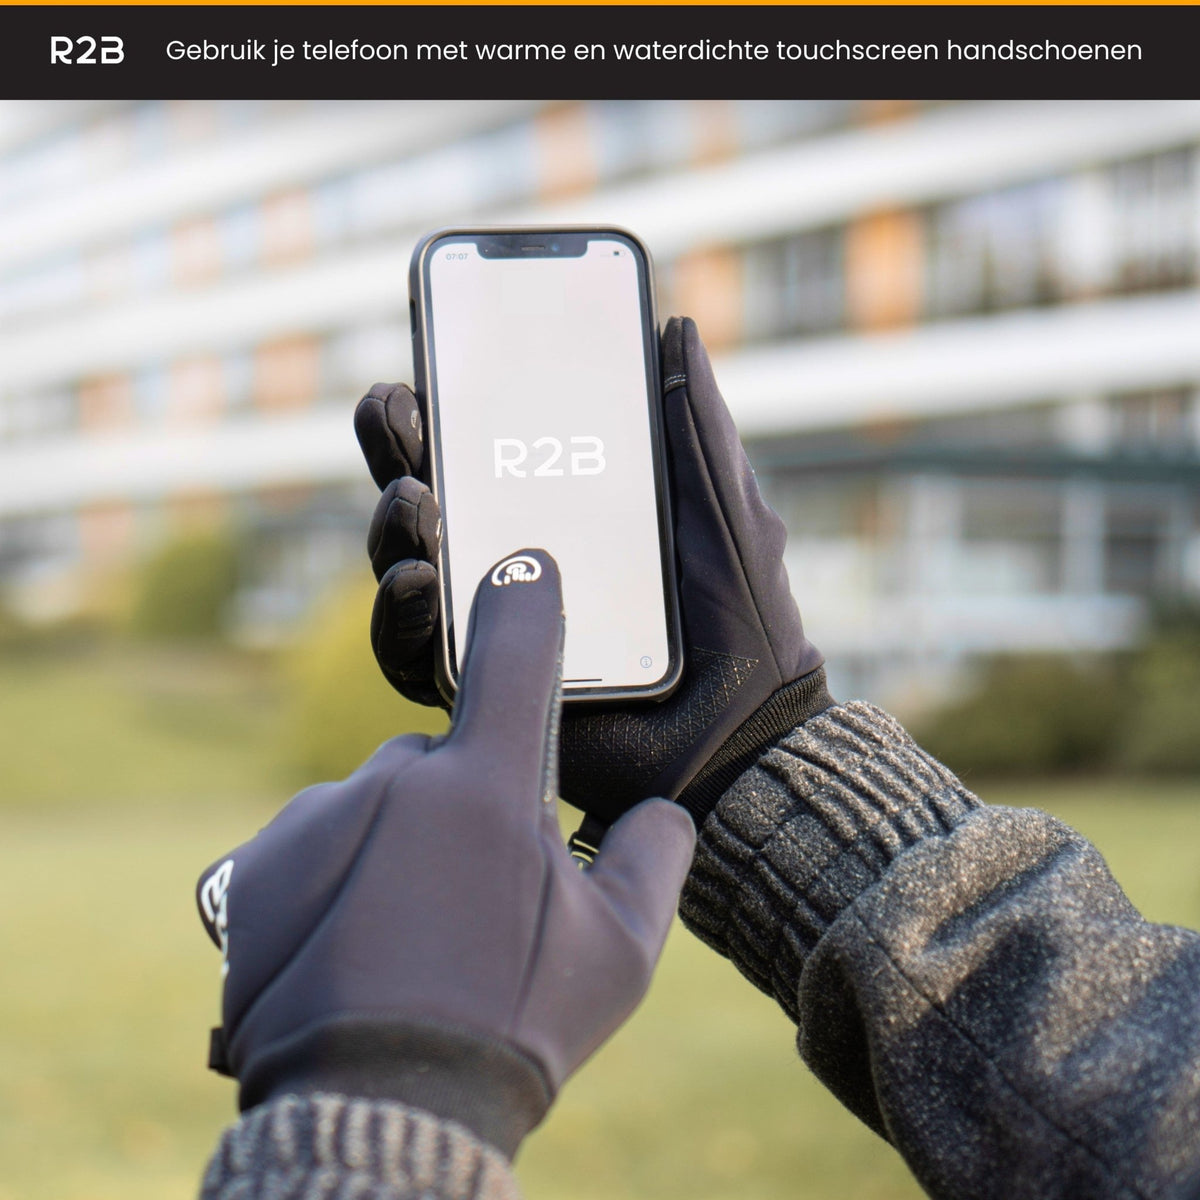 noodsituatie Rauw versus Waterdichte touchscreen handschoenen kopen? Kijk snel bij R2B Store!